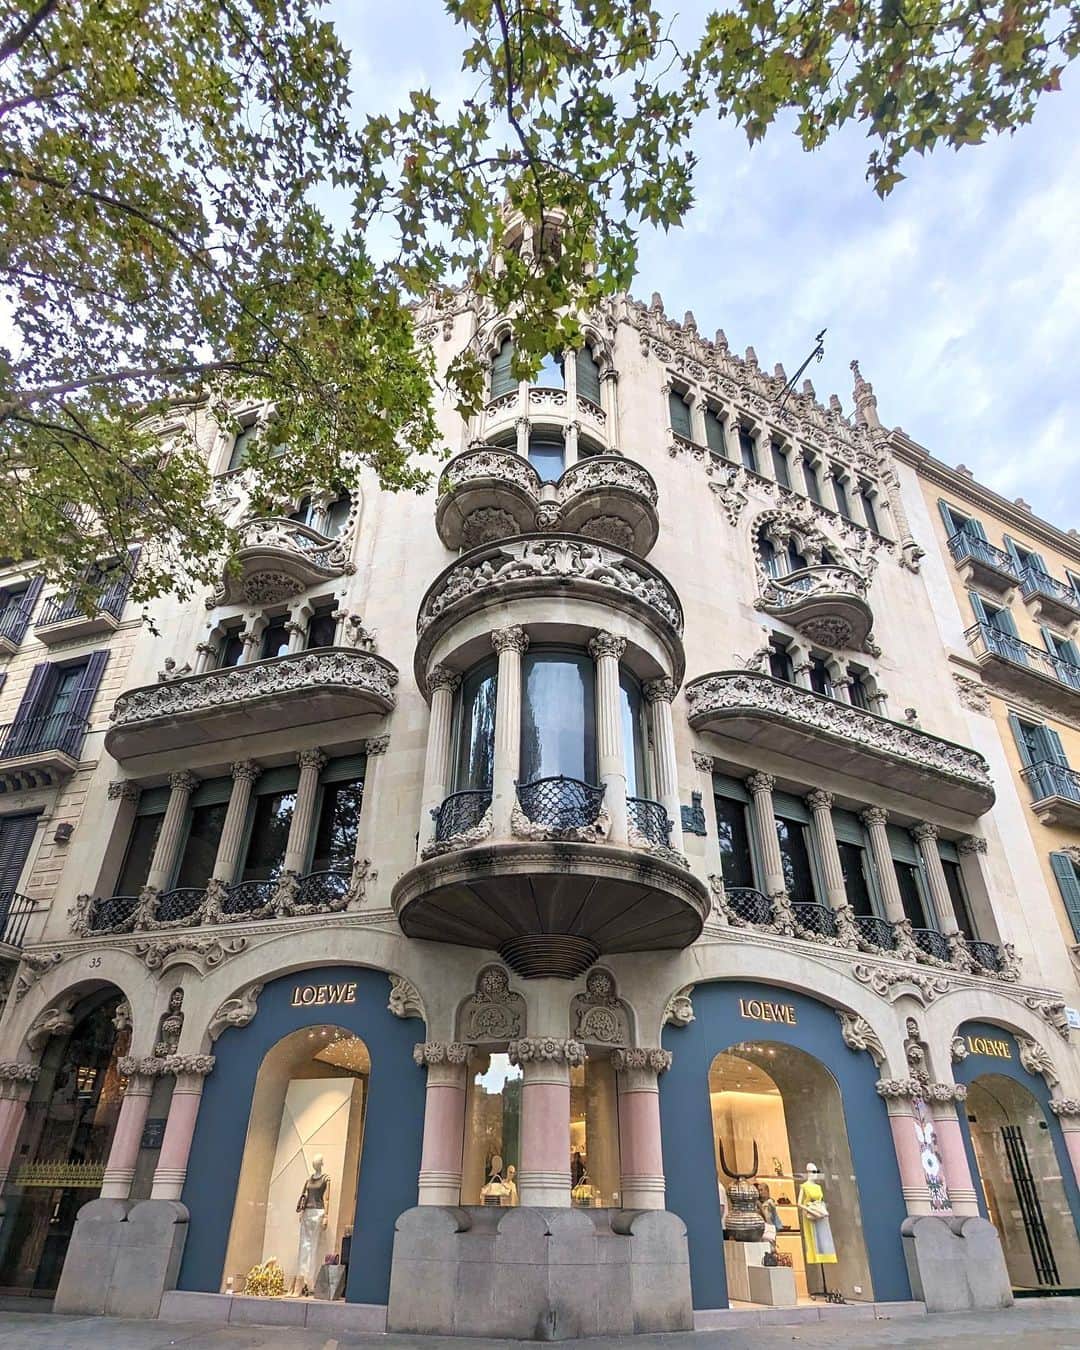 安岡あゆみのインスタグラム：「. Passeig de Gràcia🇪🇸 独特な20世紀建築物と高級ブランド店が立ち並ぶグラシア通り。 . 世界遺産に登録されている「カサ・ミラ（Casa Milla）」と「カサ・バトリョ（Casa Batllo）」はアントニ・ガウディの代表的な作品。 モデルニスモ様式という曲線が特徴で、植物をはじめとした自然界をモチーフとし、曲独創的で芸術的なデザインです。 . 花模様を巧みに表現したことから「花の建築家」と呼ばれ、生前はガウディ以上に名声を博したモンタネールにより改装された「カサ・リェオ・イ・モレラ」。 1階にはスペイン王室御用達の高級ブランド「ロエベ LOEWE」が入っています。 ブランドブティックの中でも一際目立っていました。 . グラシア通りは日本で言うと、銀座のような雰囲気かな🛍️ . . #barcelona #spain #barcelonatravel #spaintravel #passeigdegracia #casamila #casabatllo #antonigaudi #montaner #ayumi_y_travel #バルセロナ #スペイン #グラシア通り #アントニガウディ #カサミラ #カサバトリョ #モンタネール #ロエベ #バルセロナ旅行 #スペイン旅行 #ヨーロッパ旅行 #ヨーロッパ周遊 #世界遺産」